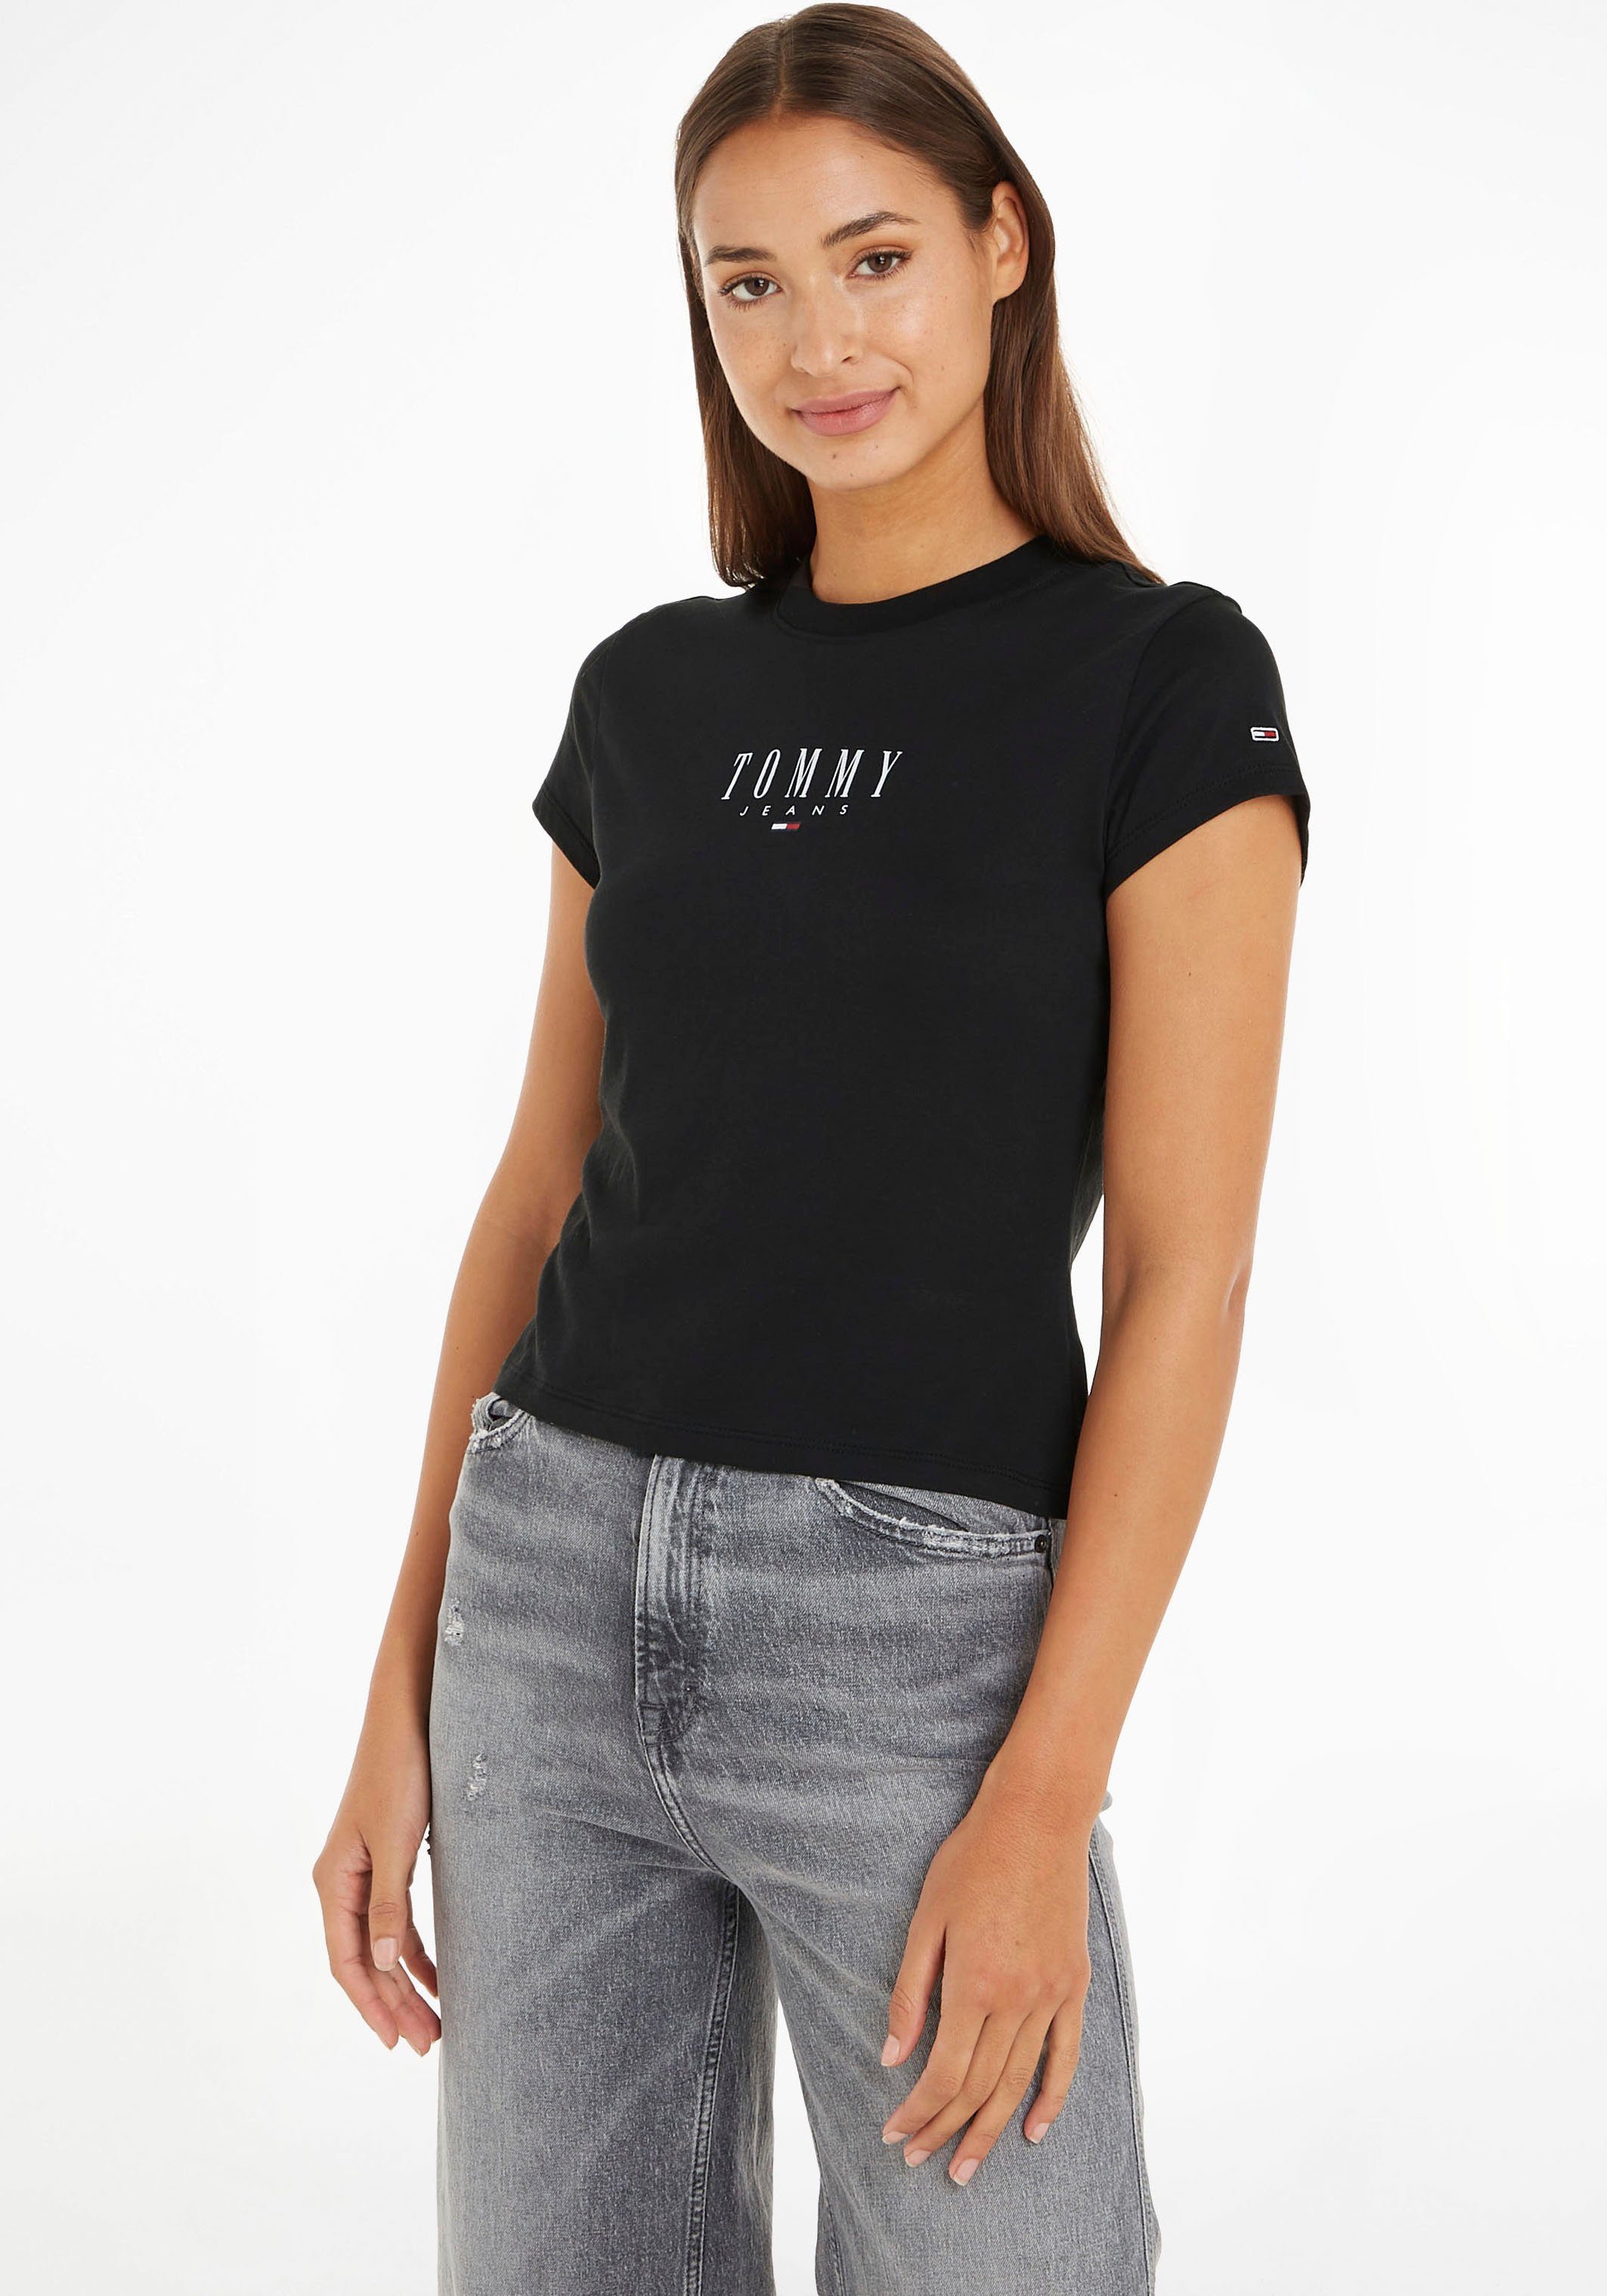 ESSENTIAL T-Shirt Logostickerei und Jeans 2 BBY TJW Tommy Black Logodruck mit LOGO